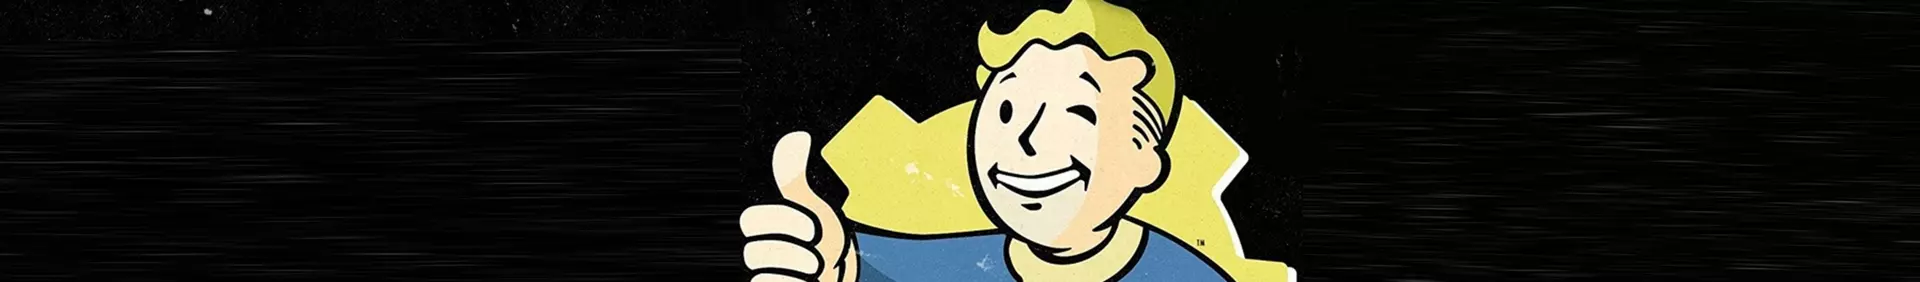 Fallout 4 Edición Game of The Year Steelbook